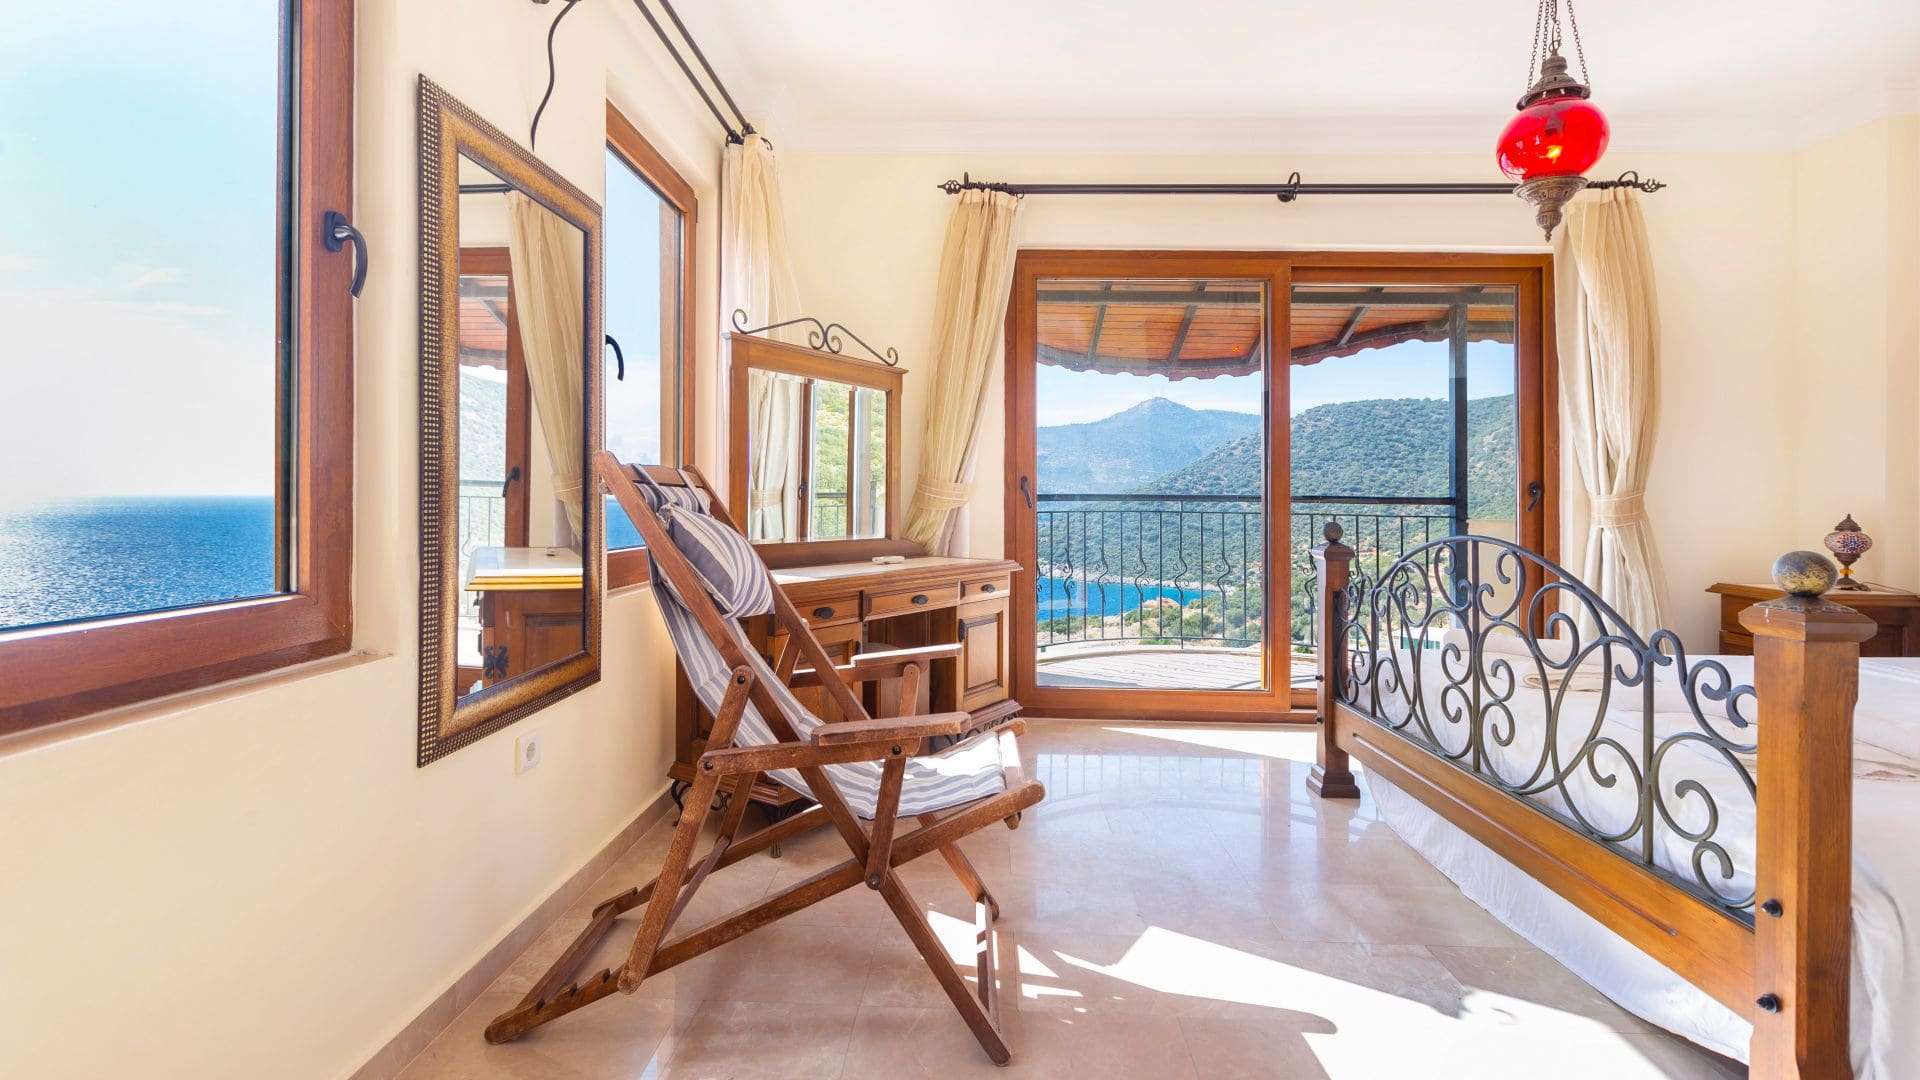 Discover Luxury Villa in Kalkan: Villa Vaha, Your Ideal Villa Rental in Turkey